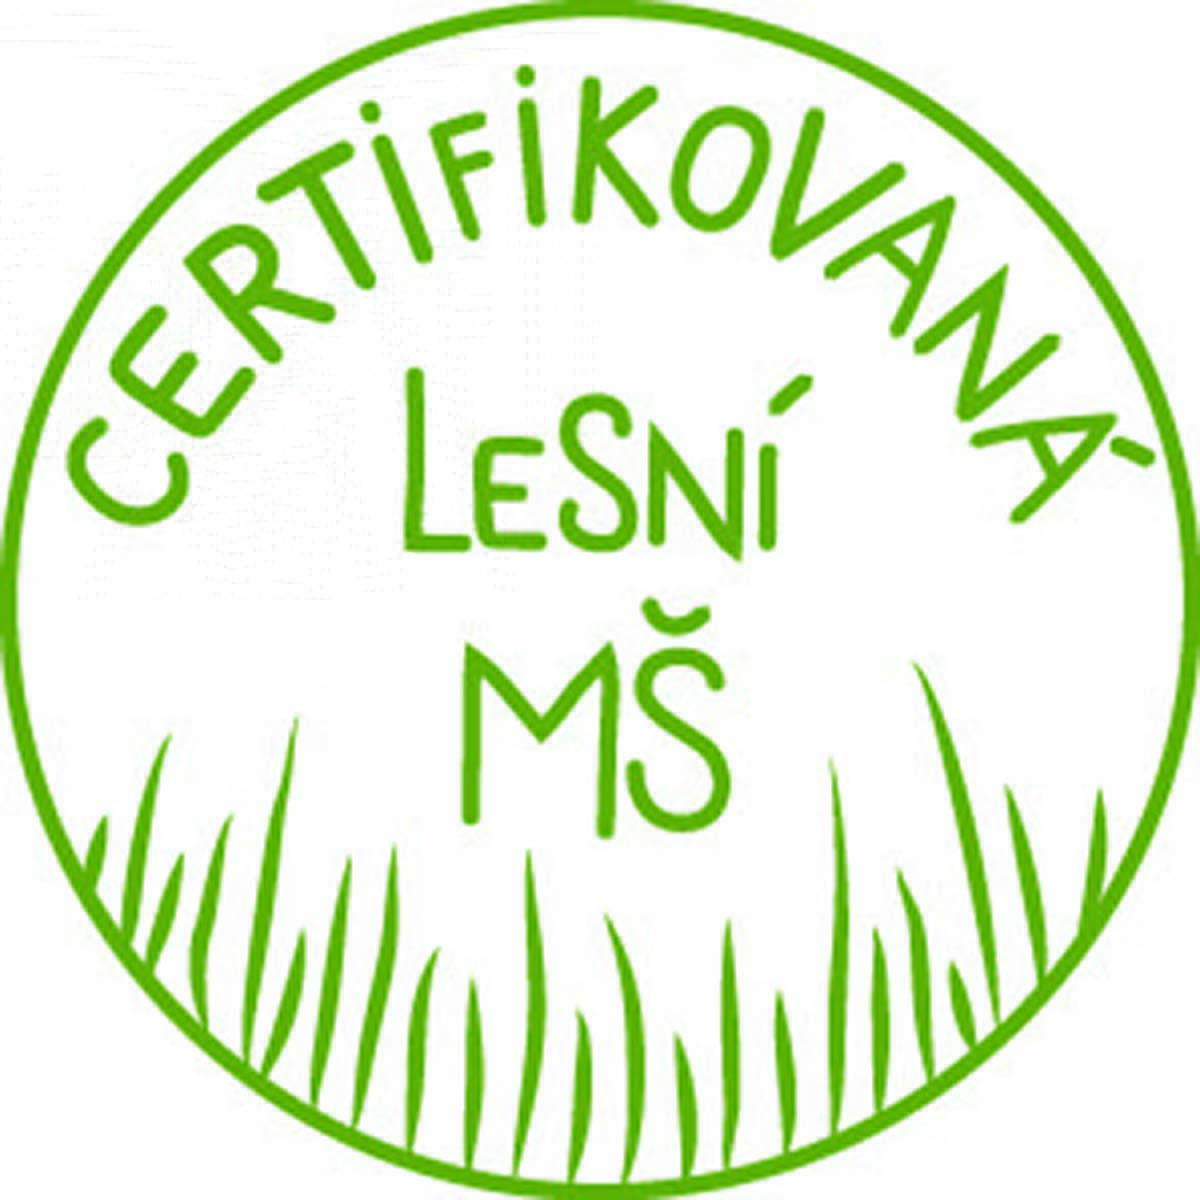 Certifikovaná lesní mateřská školka - razítko